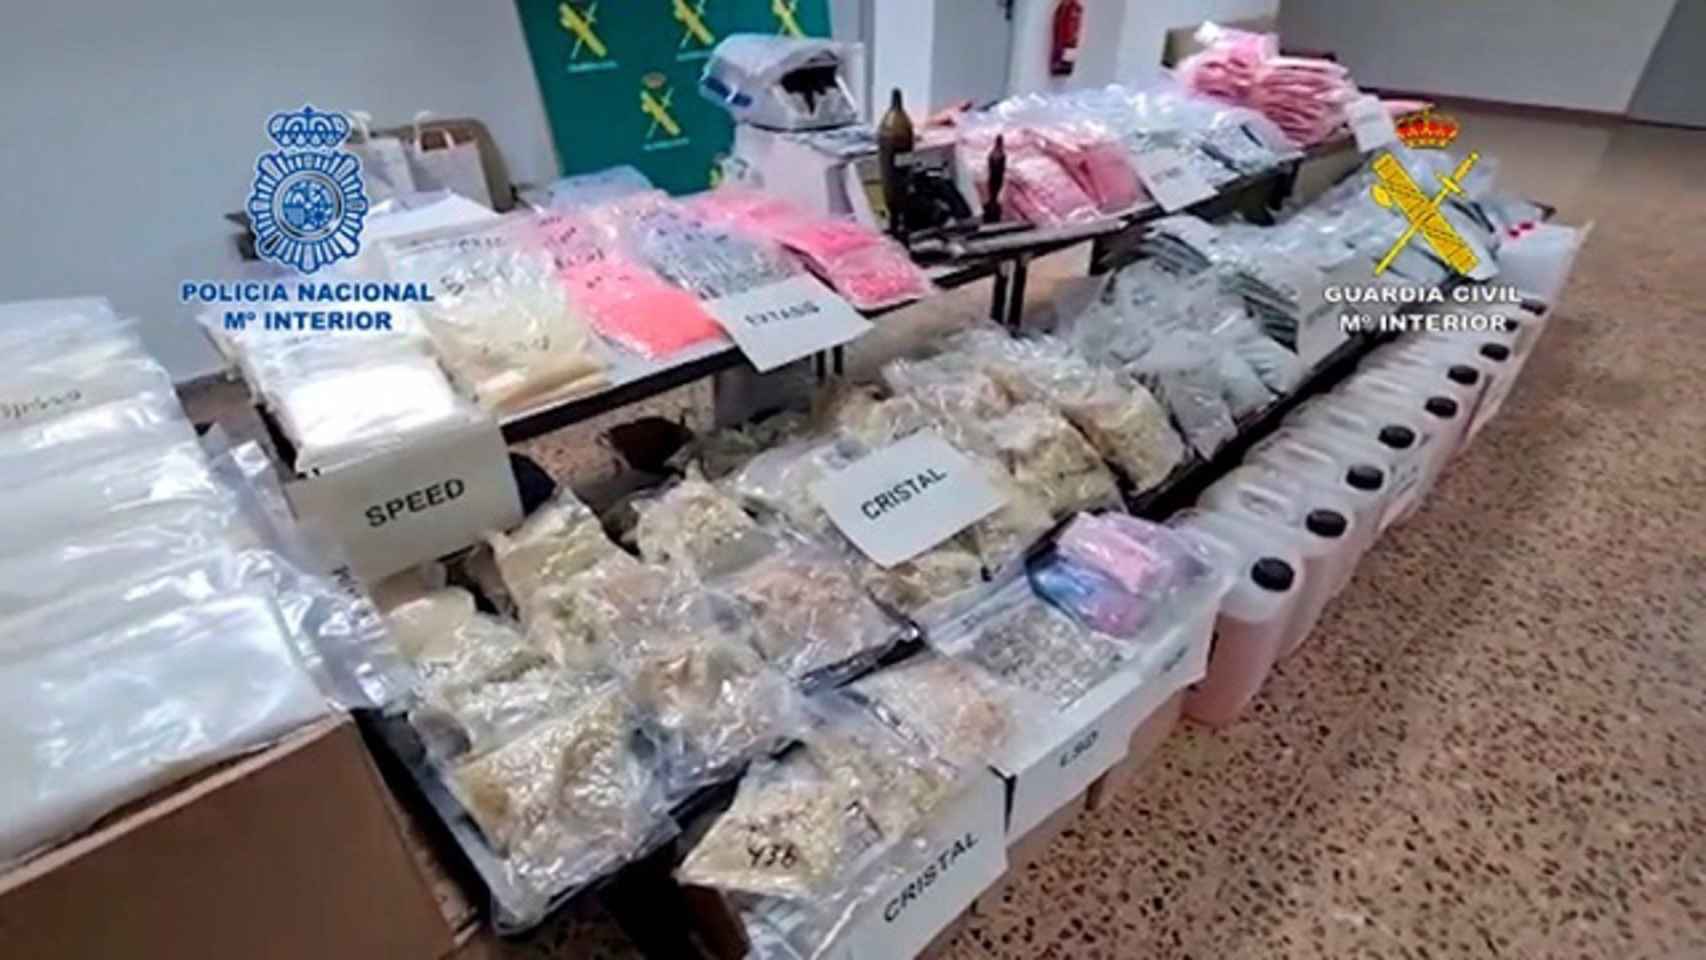 La Guardia Civil desarticulada la mayor organización dedicada a las drogas sintéticas en una operación en Barcelona / GUARDIA CIVIL